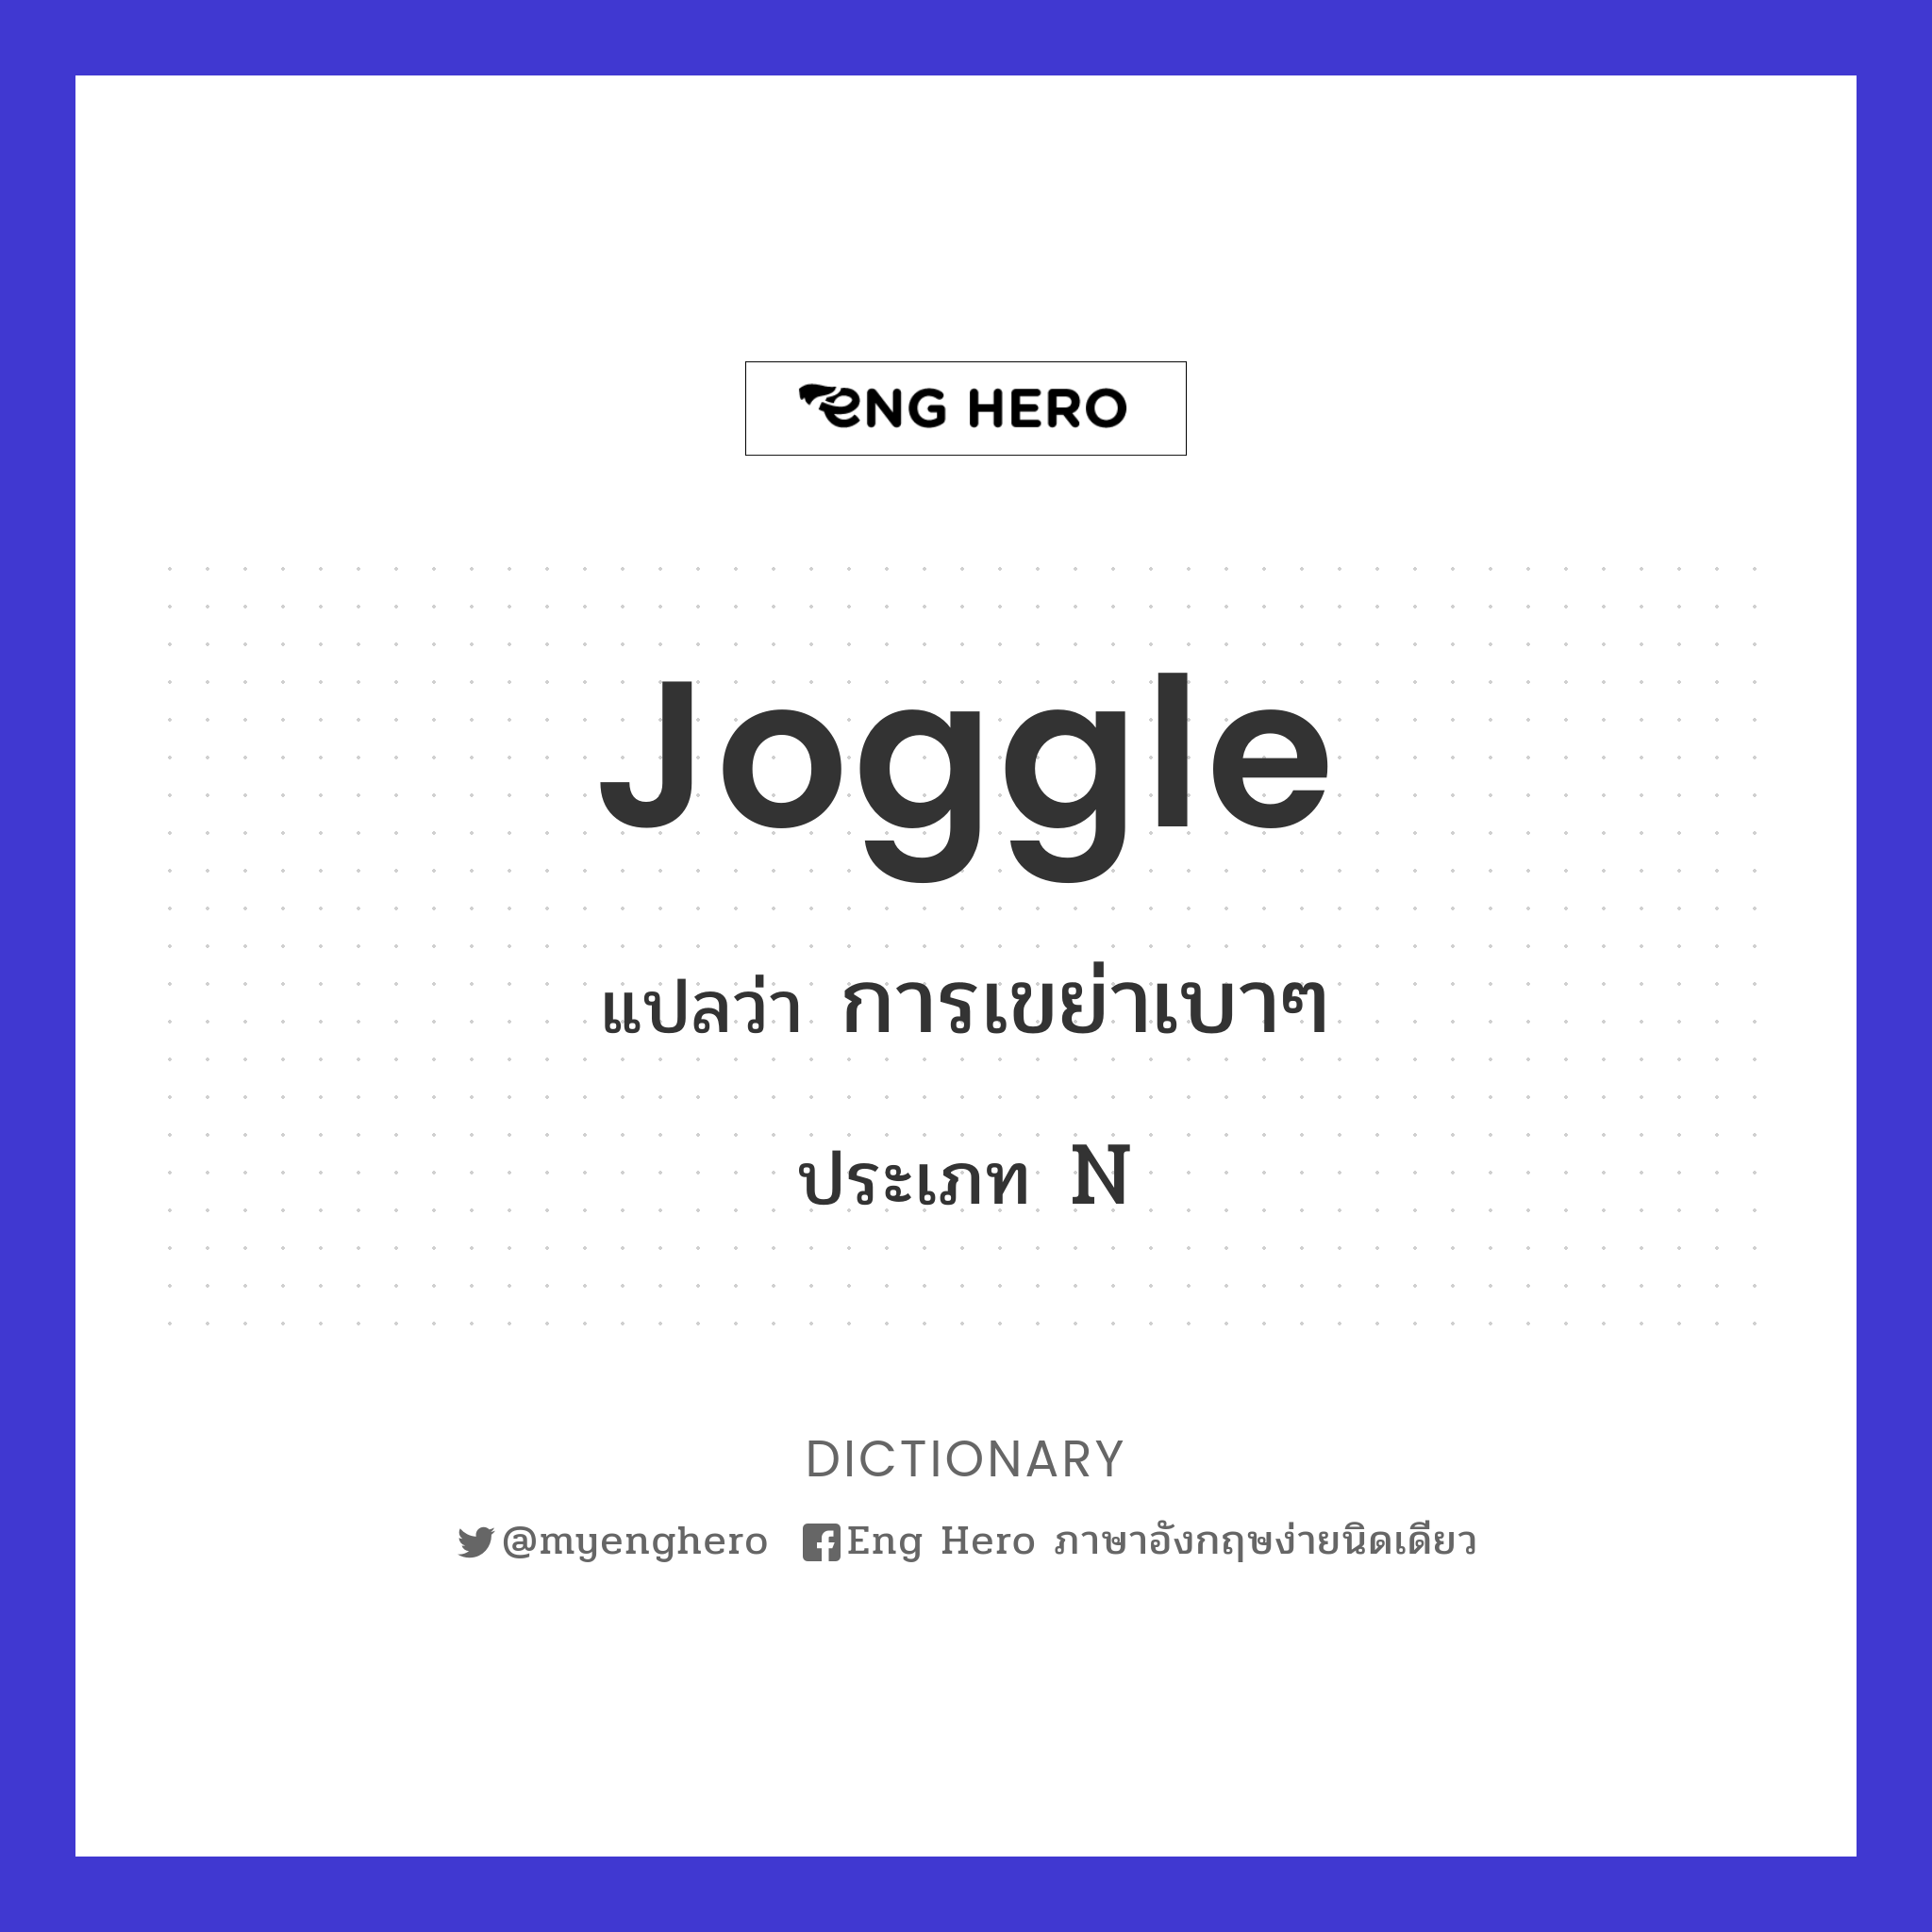 joggle